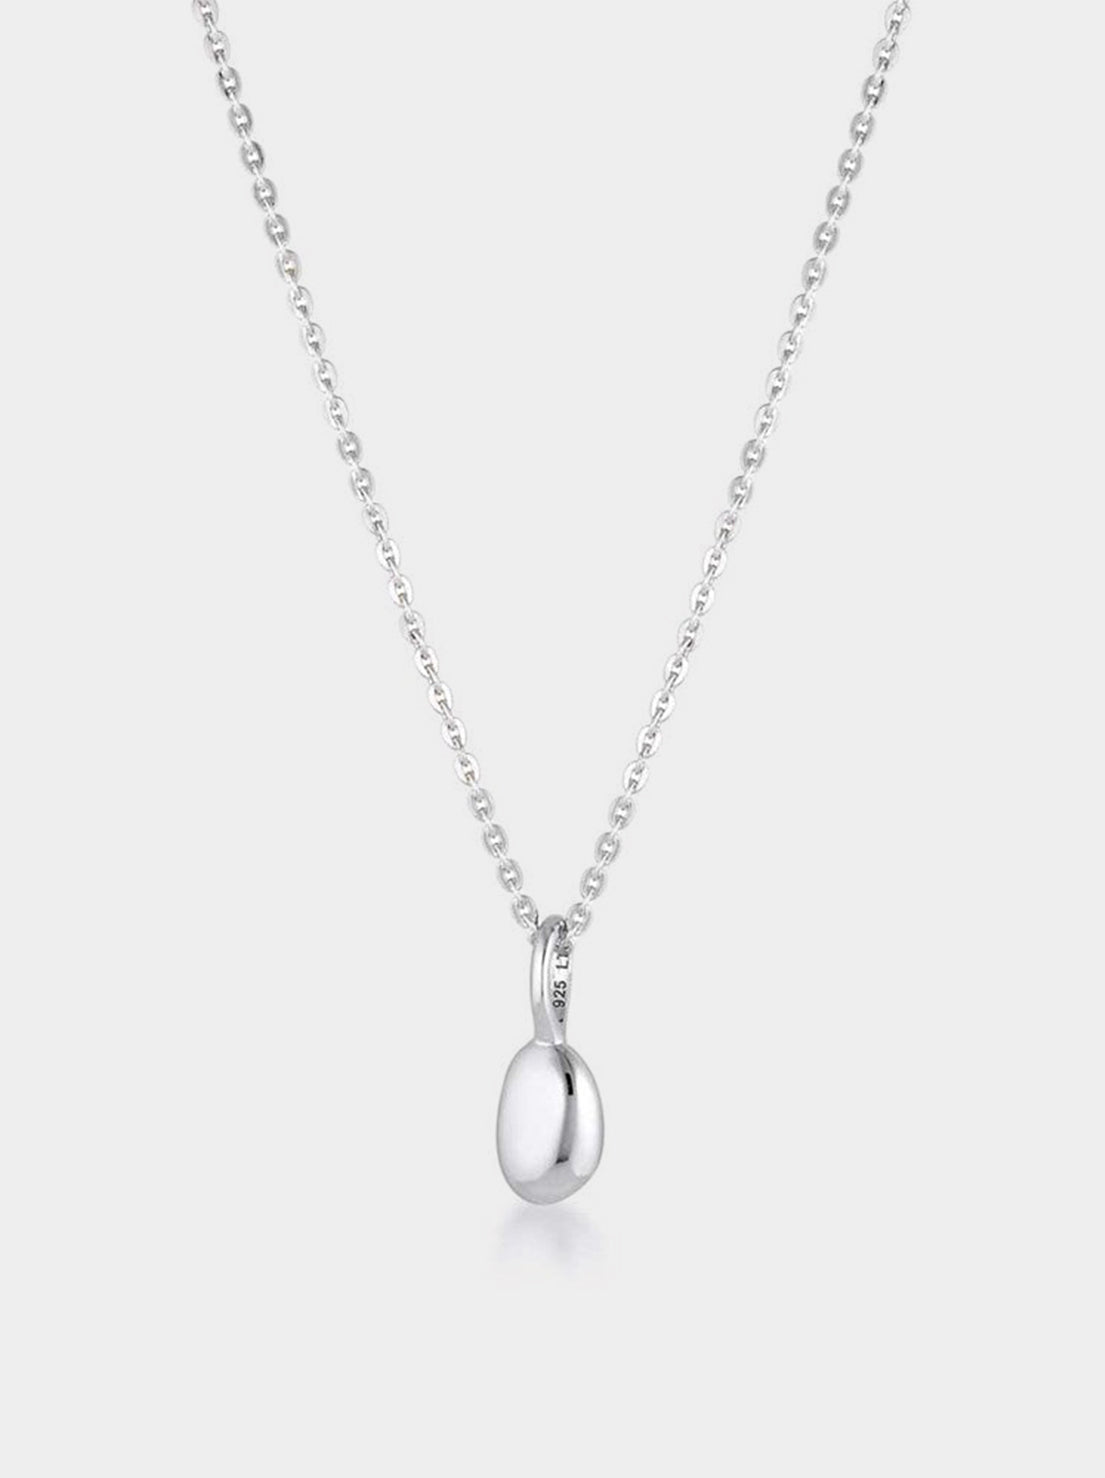 Linda Tahija - Mini Alga Necklace - Sterling Silver